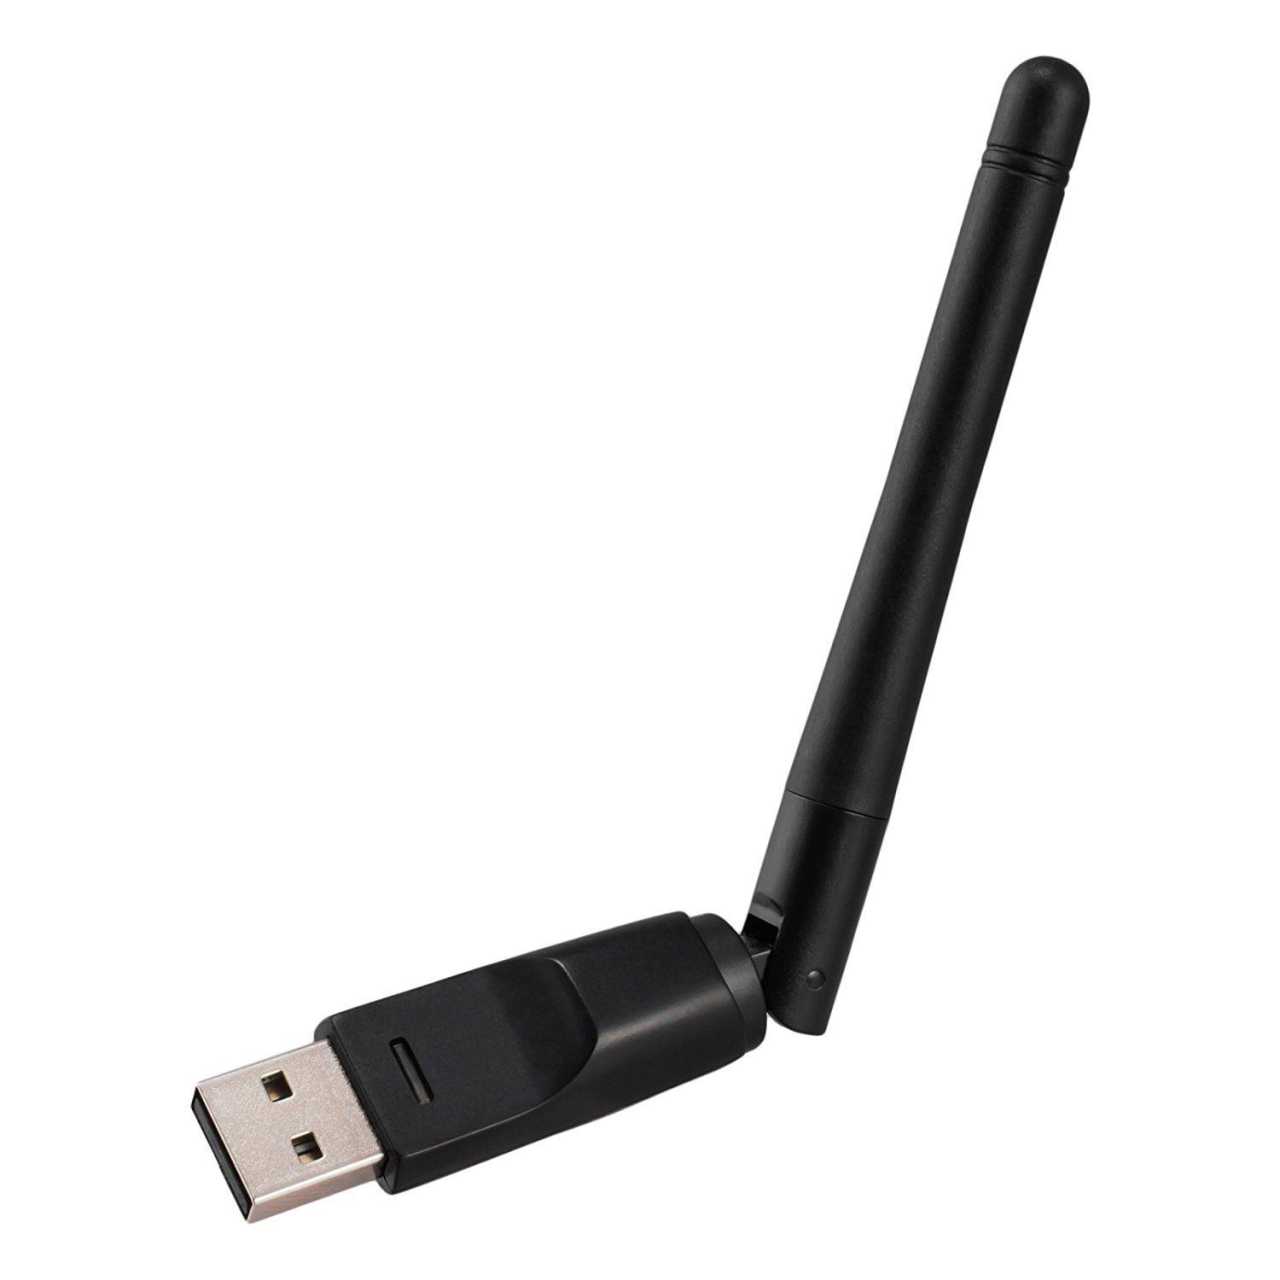 USB Wlan Stick 150MBit/s mit Antenne (2.4 GHz USB 2.0 802.11b/g/n für Windows Linux) von Protek